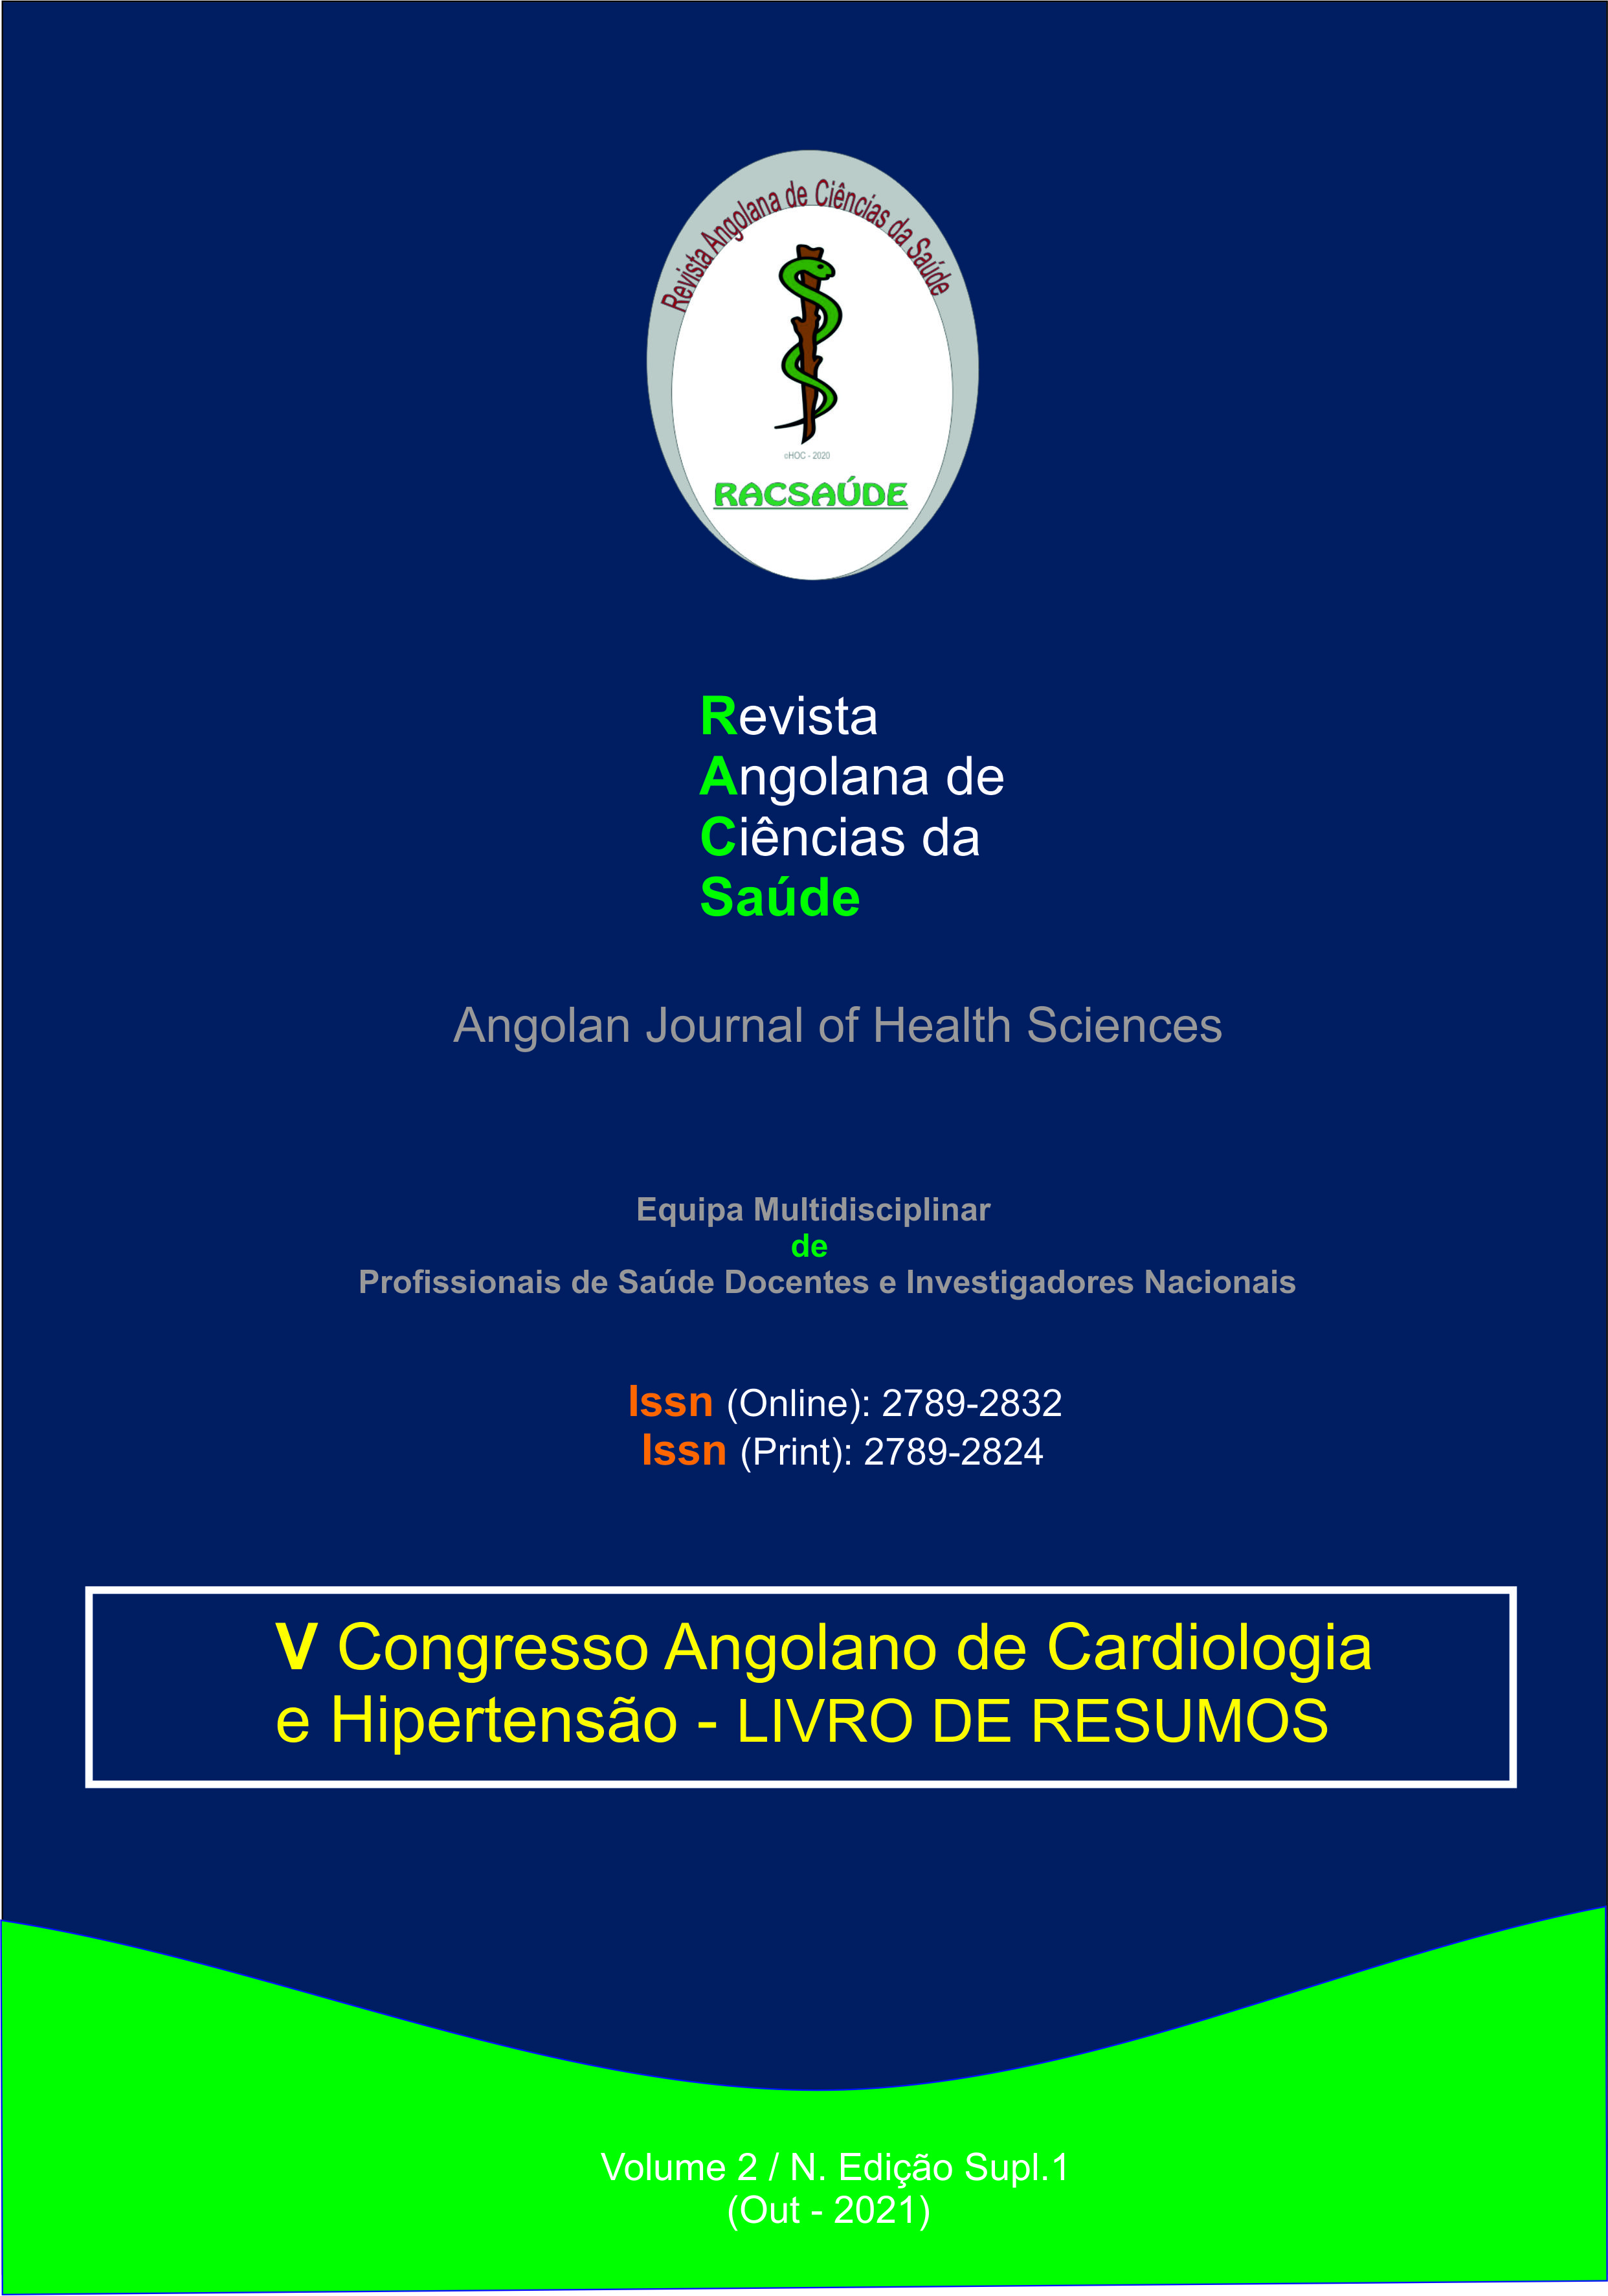 					Ver Vol. 2 N.º Edição Supl. 1 (2021): V Congresso Angolano de Cardiologia e Hipertensão - Livro de Resumos
				